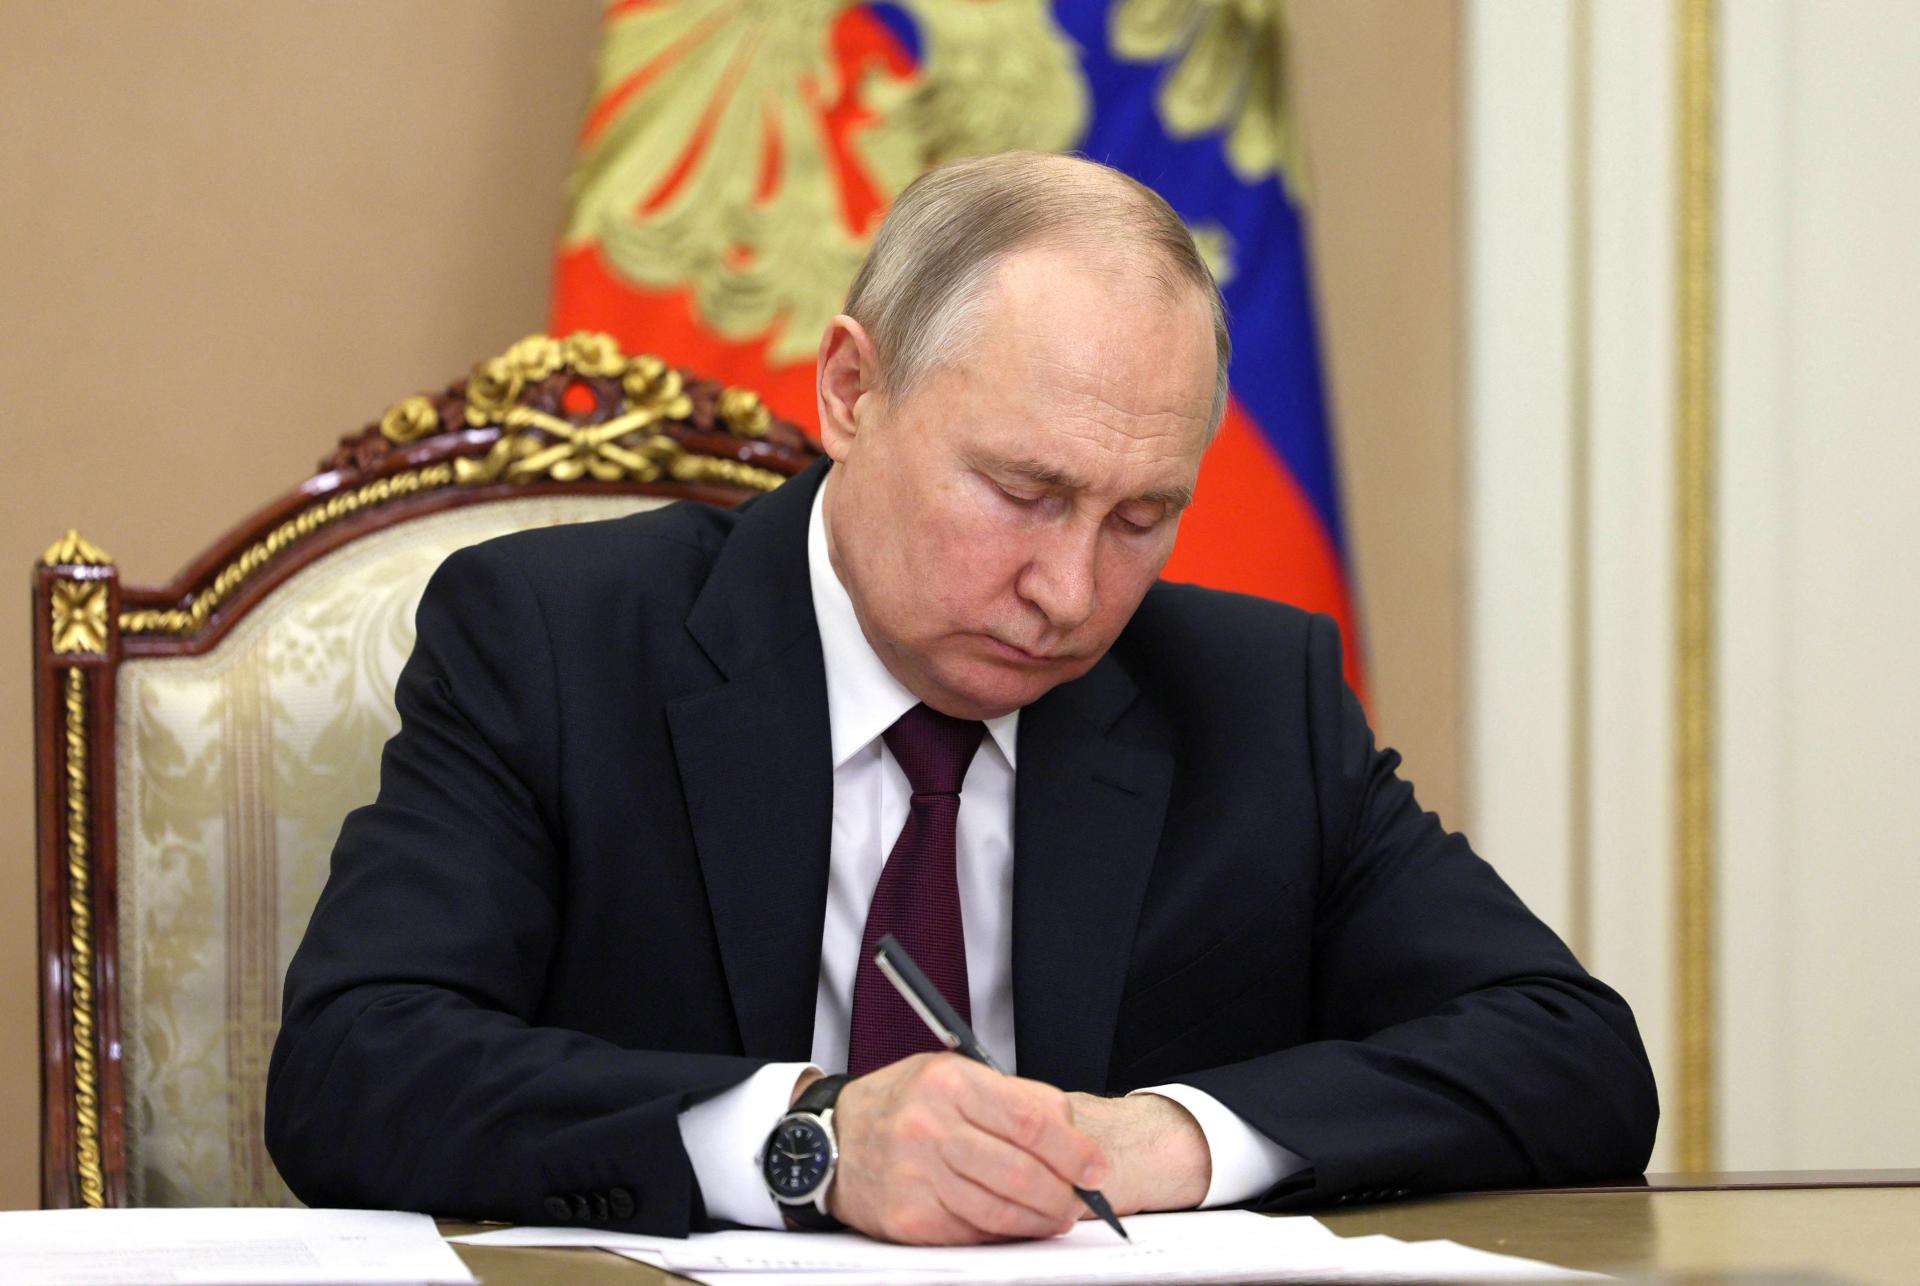 Putina rozčuľujú zlé správy z bojiska, už mu ich radšej nehovoria, tvrdia zdroje